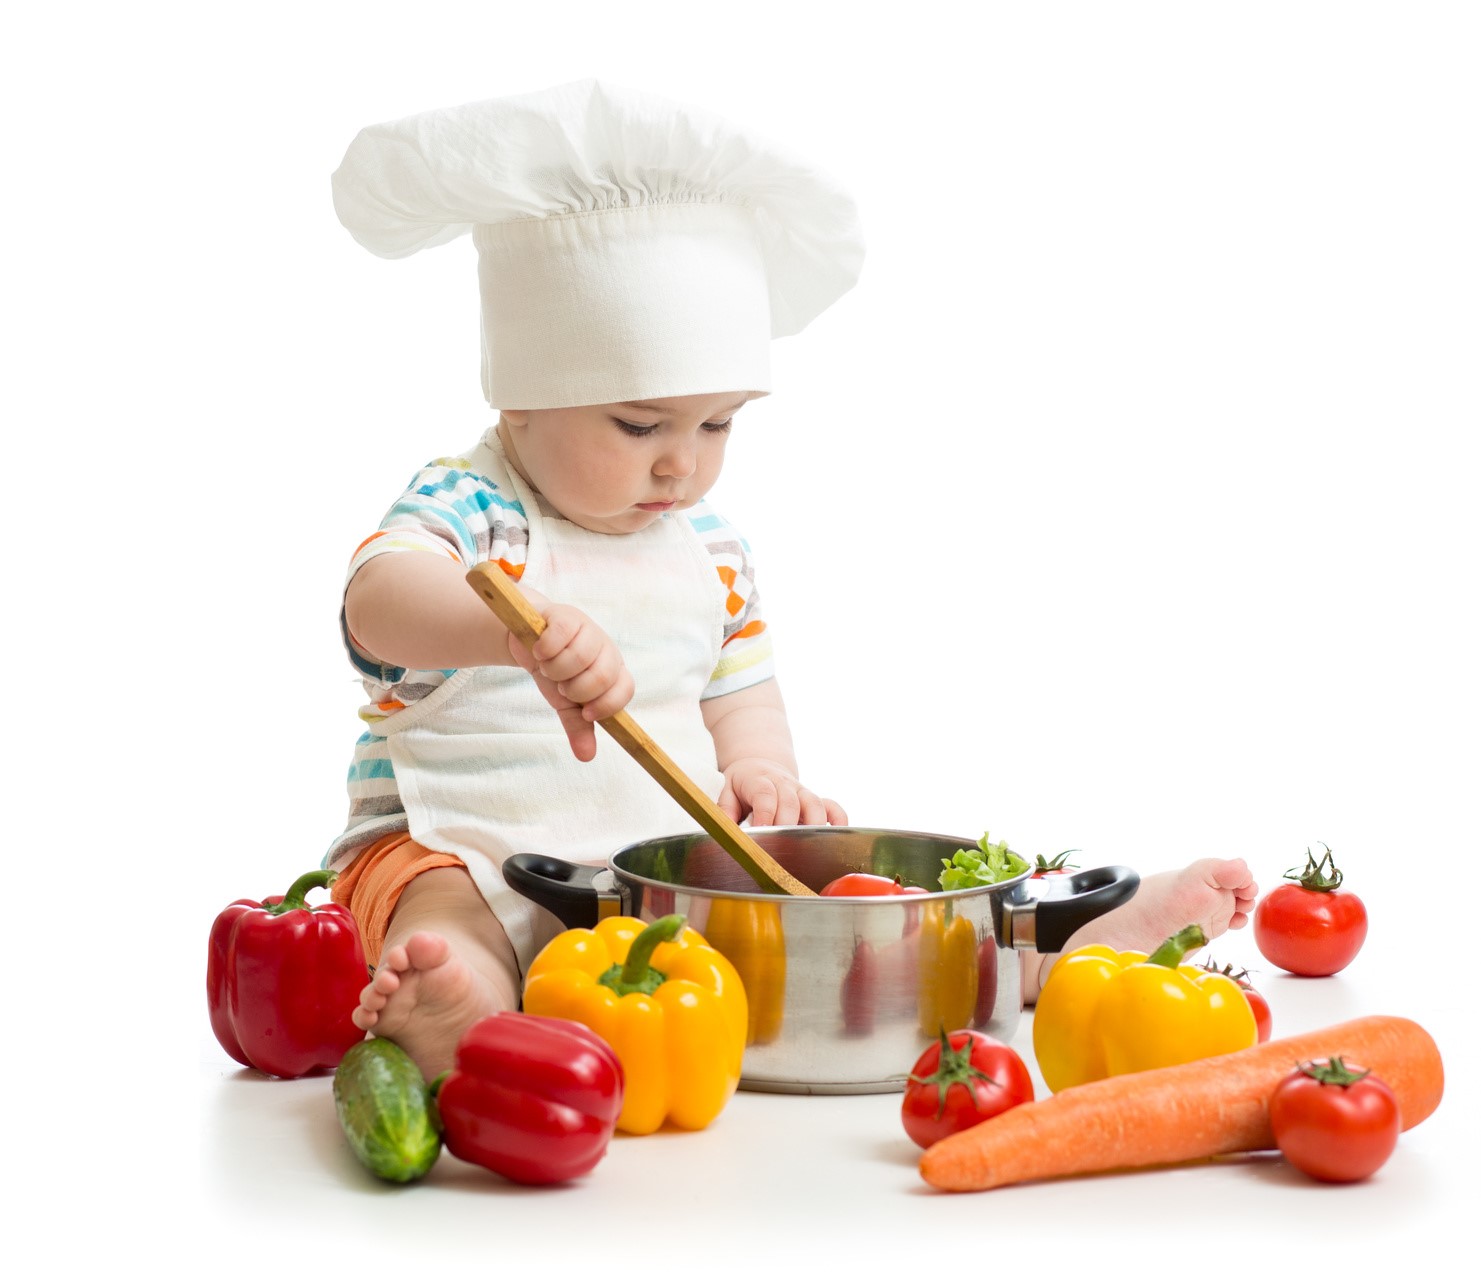 Thực phẩm sạch quan trọng trong bảo vệ sức khỏe của bé